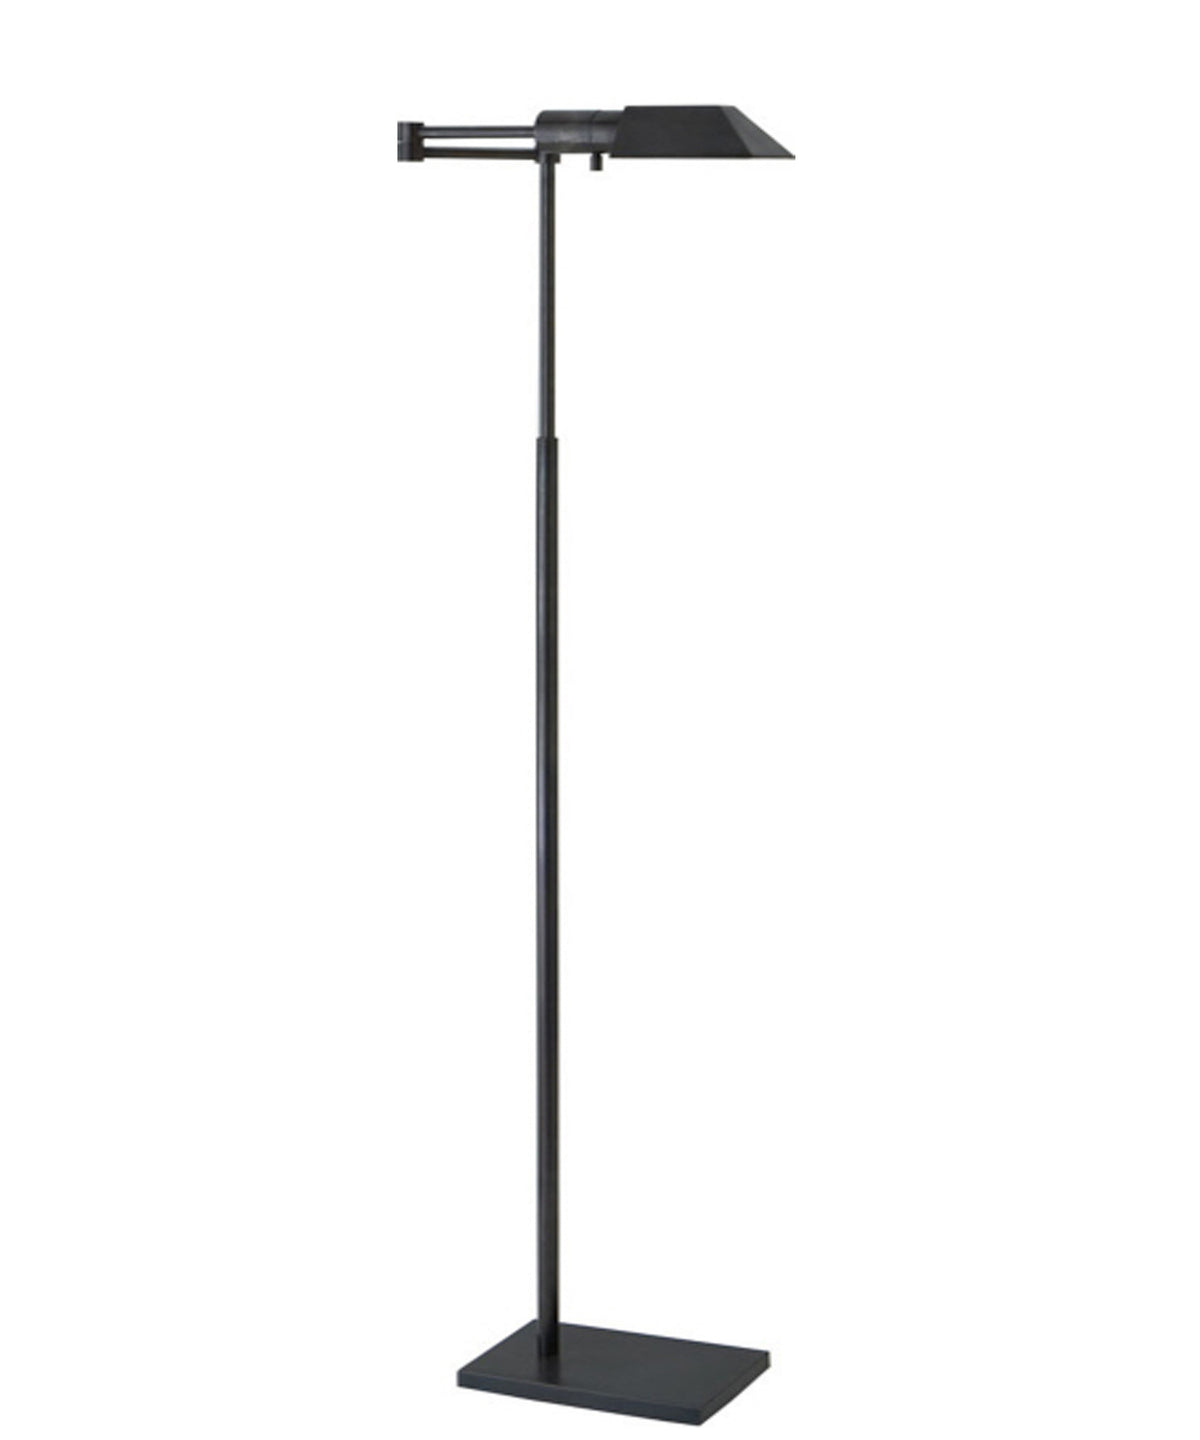 Studio Swing Arm Floor Lamp, Bronze – High Street Market